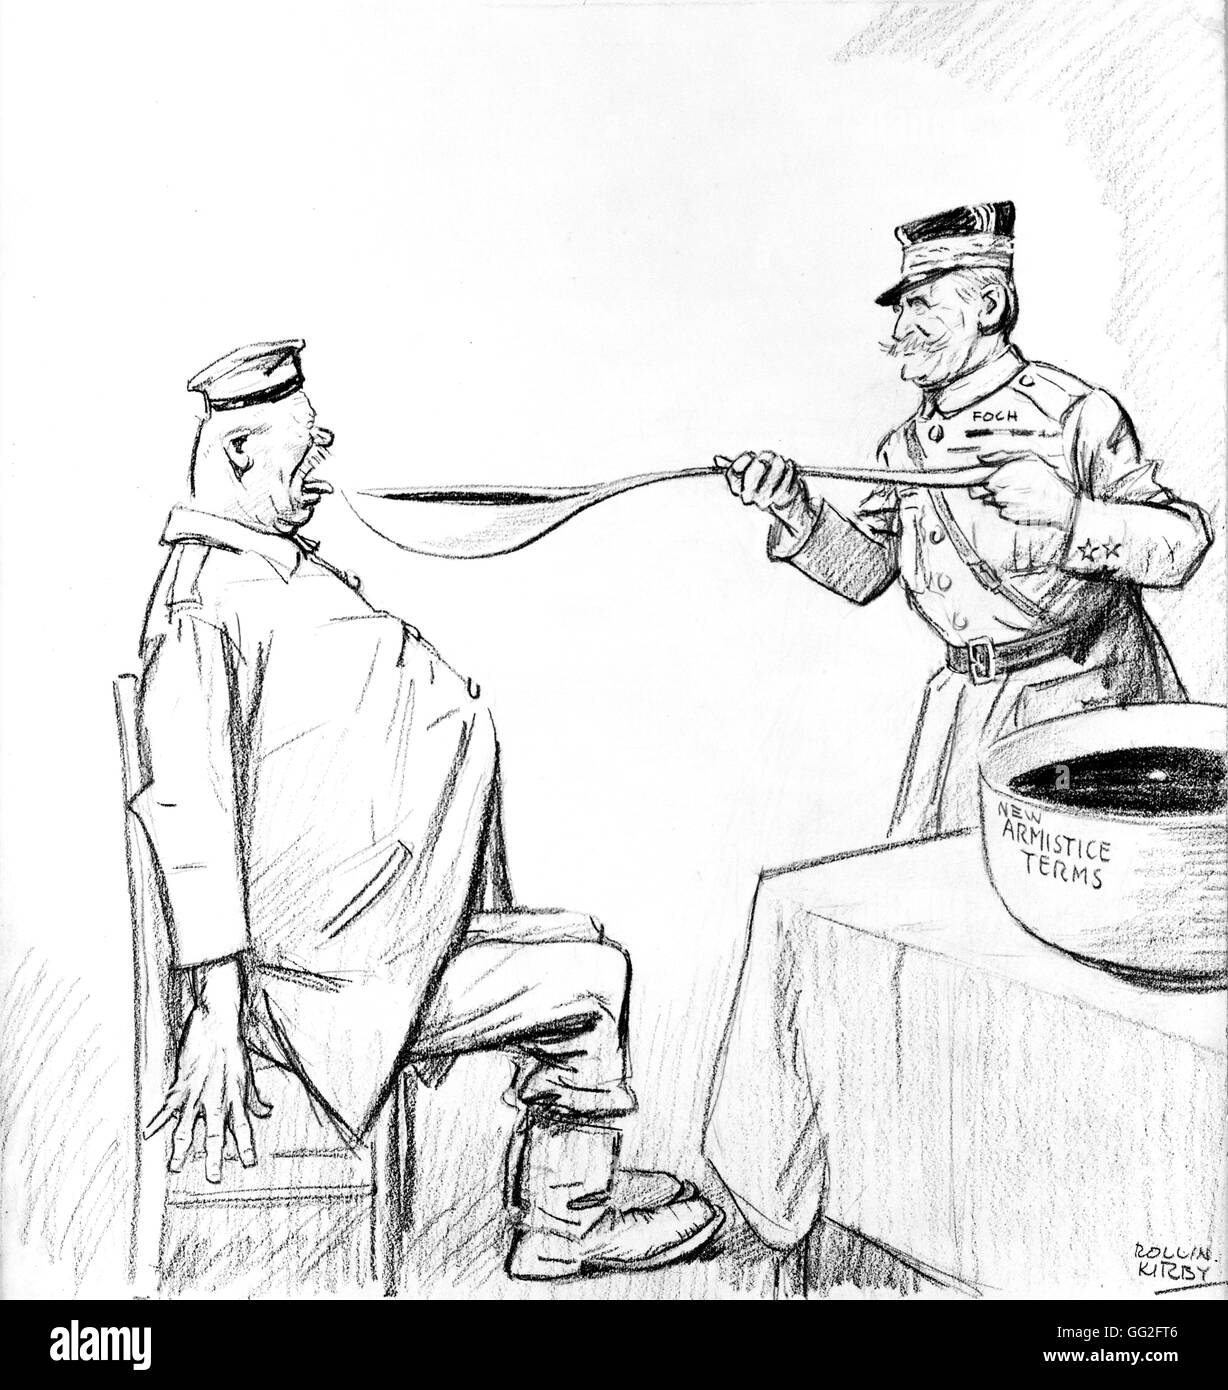 Ersten Weltkrieg. Karikatur von Kirby: Foch und der Waffenstillstands-Vertrag auferlegten Deutschland, 11. November 1918. Stockfoto